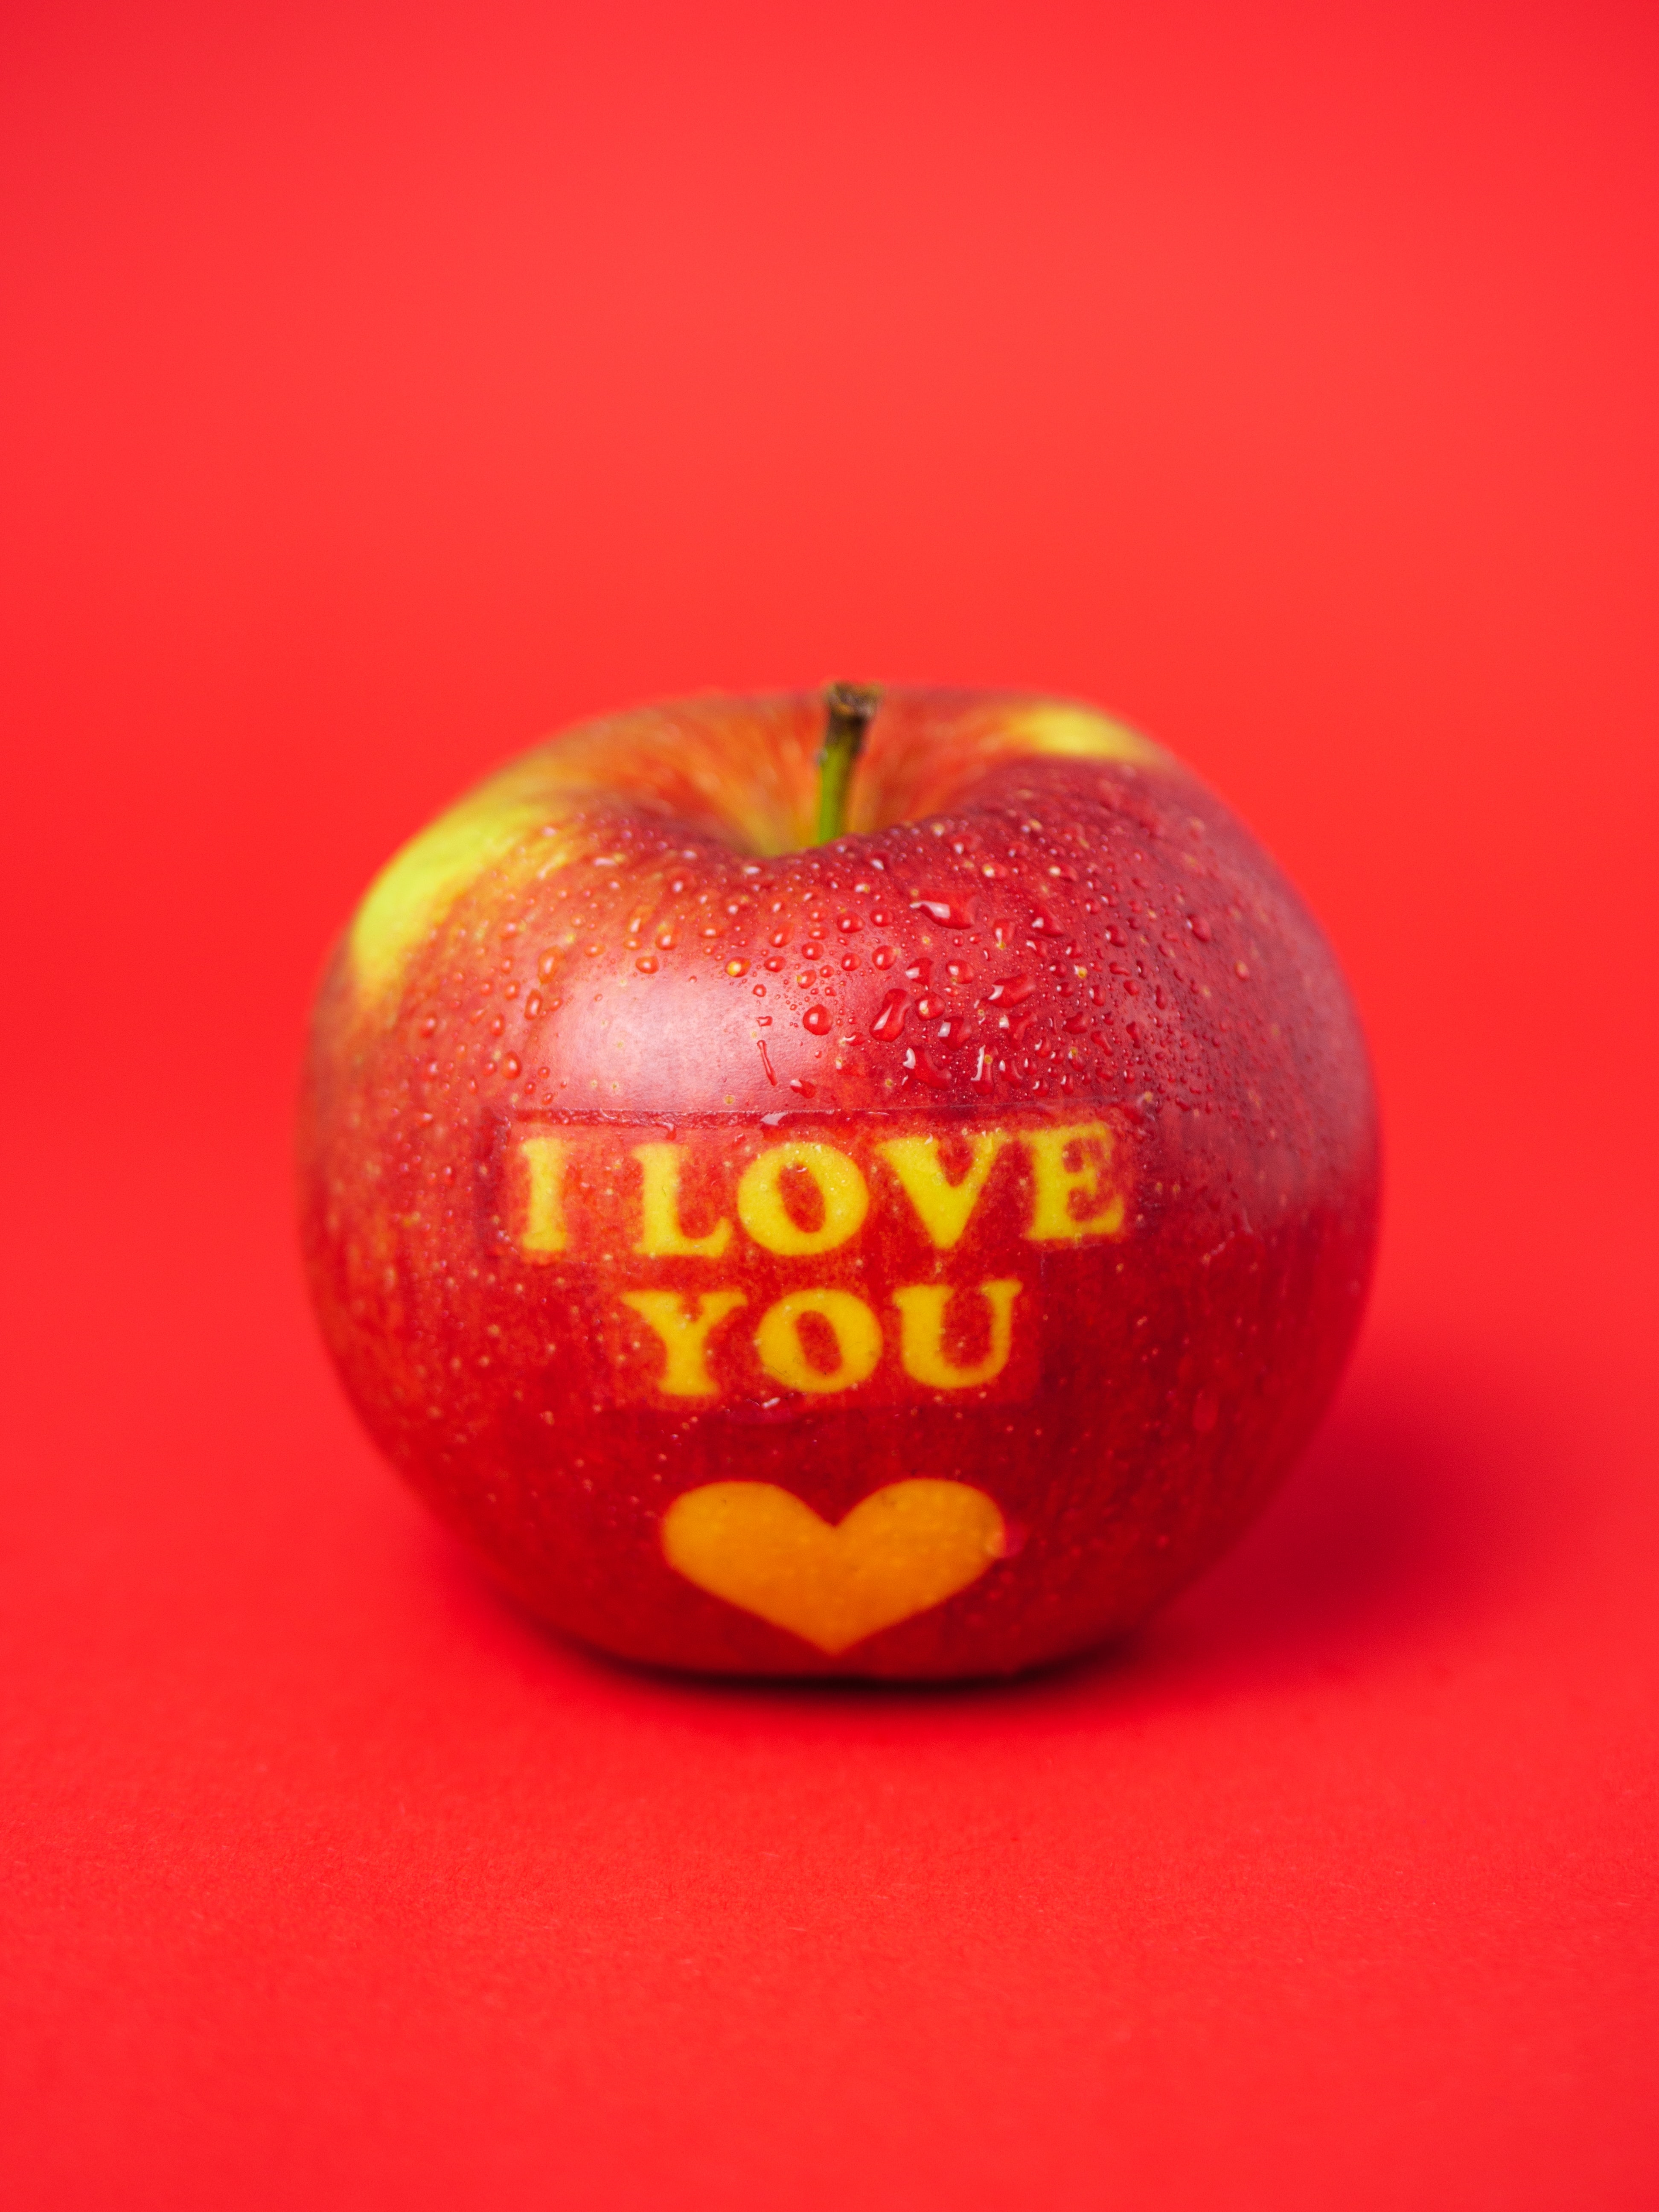 156162 免費下載壁紙 苹果, 爱, 红色, 话, 单词, 红色的, 题词, 铭文, 信息 屏保和圖片